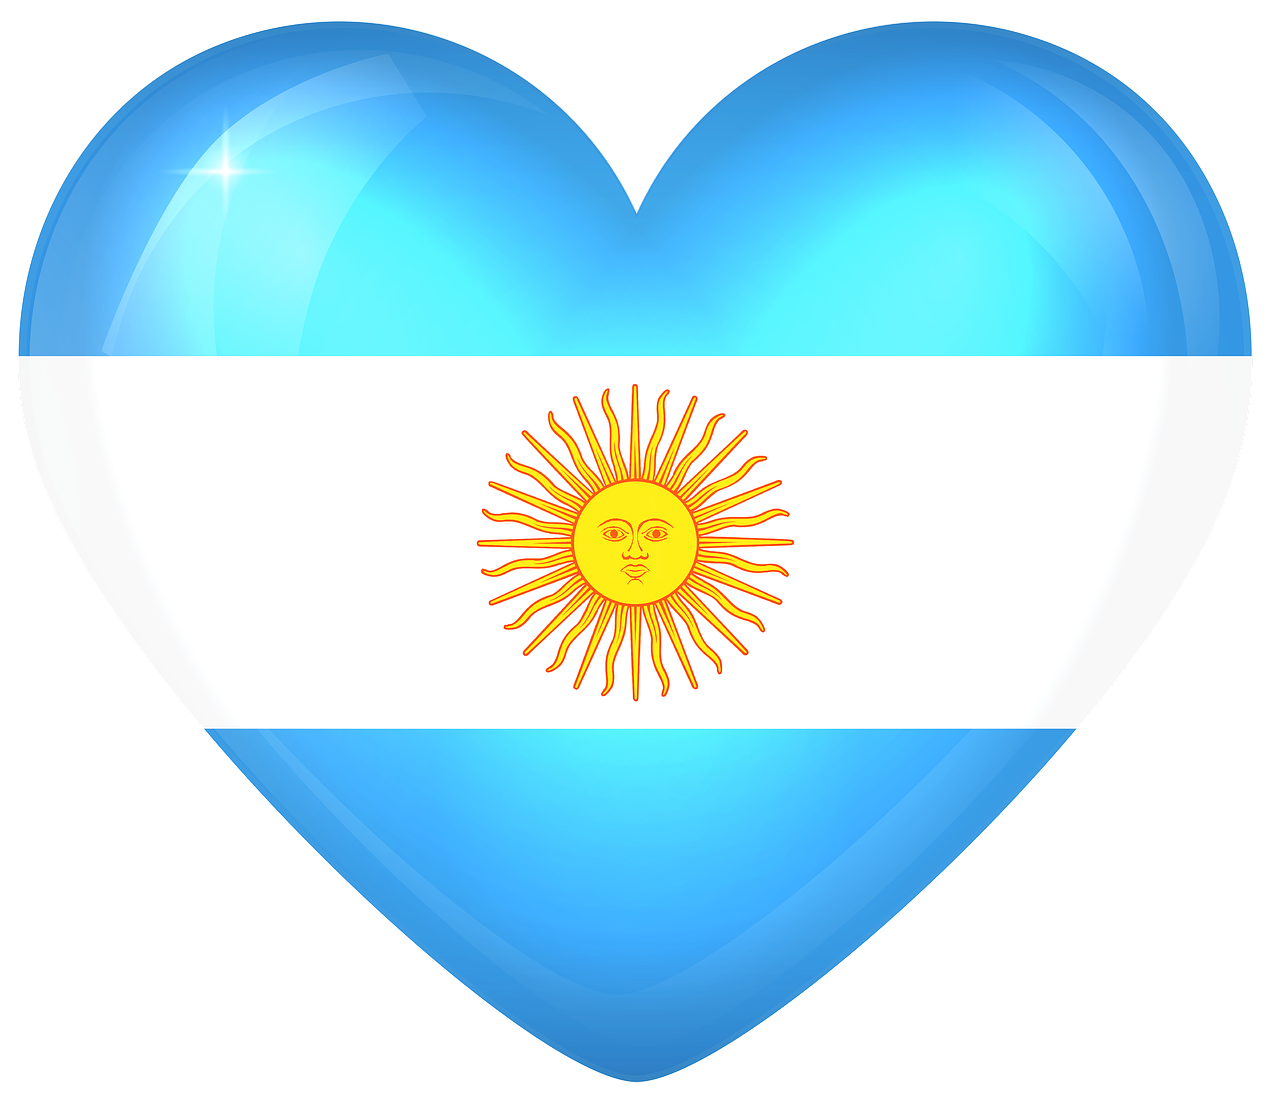 argentina large heart free photo